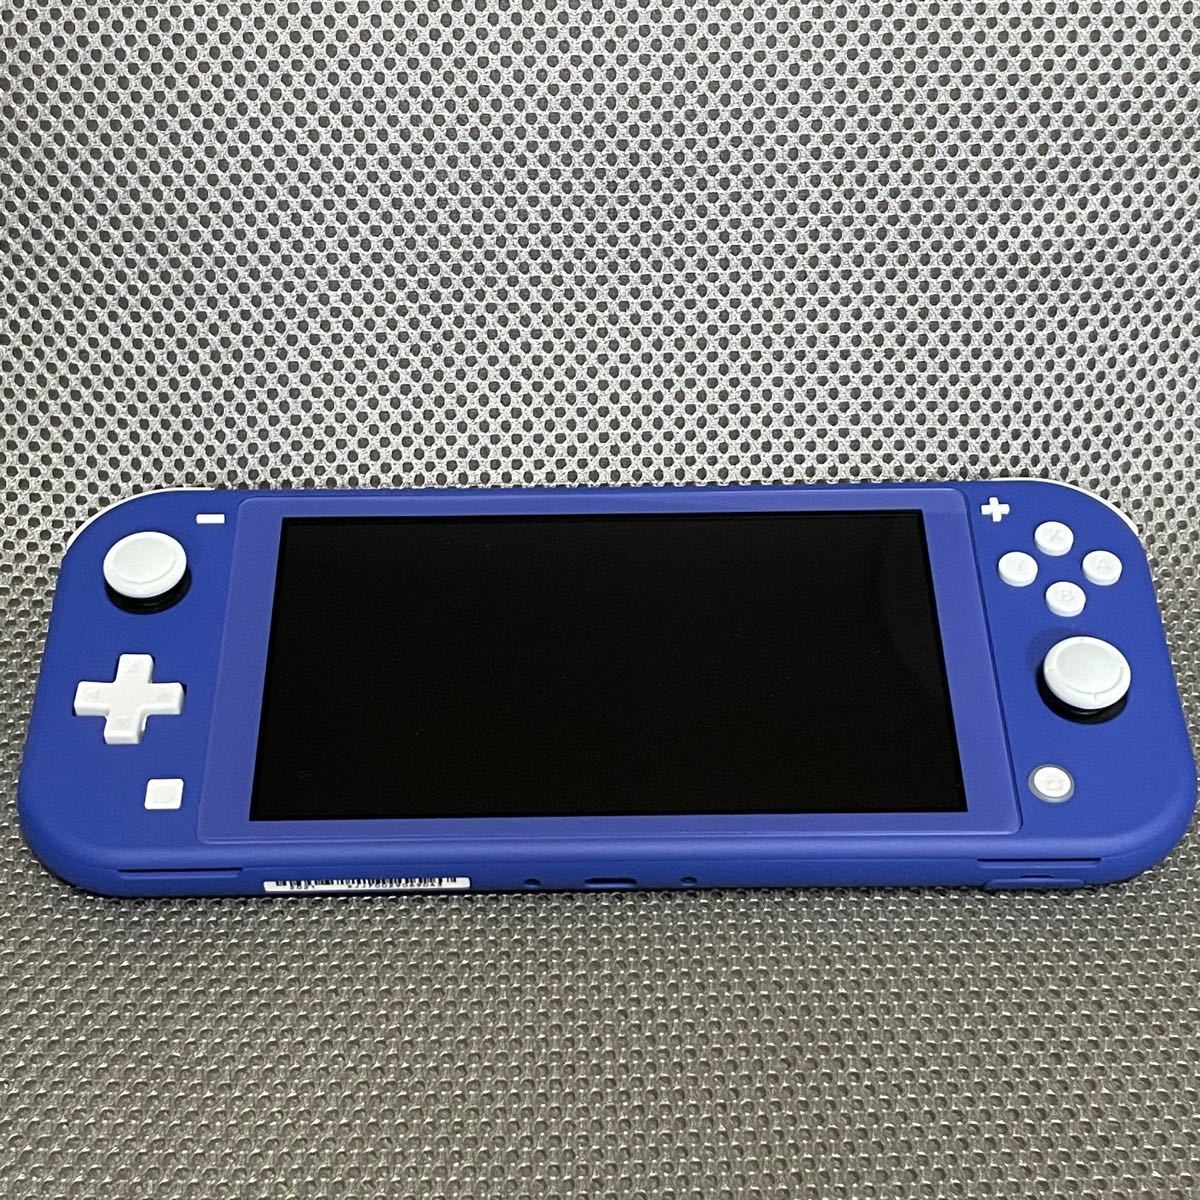 10080円 超高品質で人気の Nintendo Switch Lite ブルー